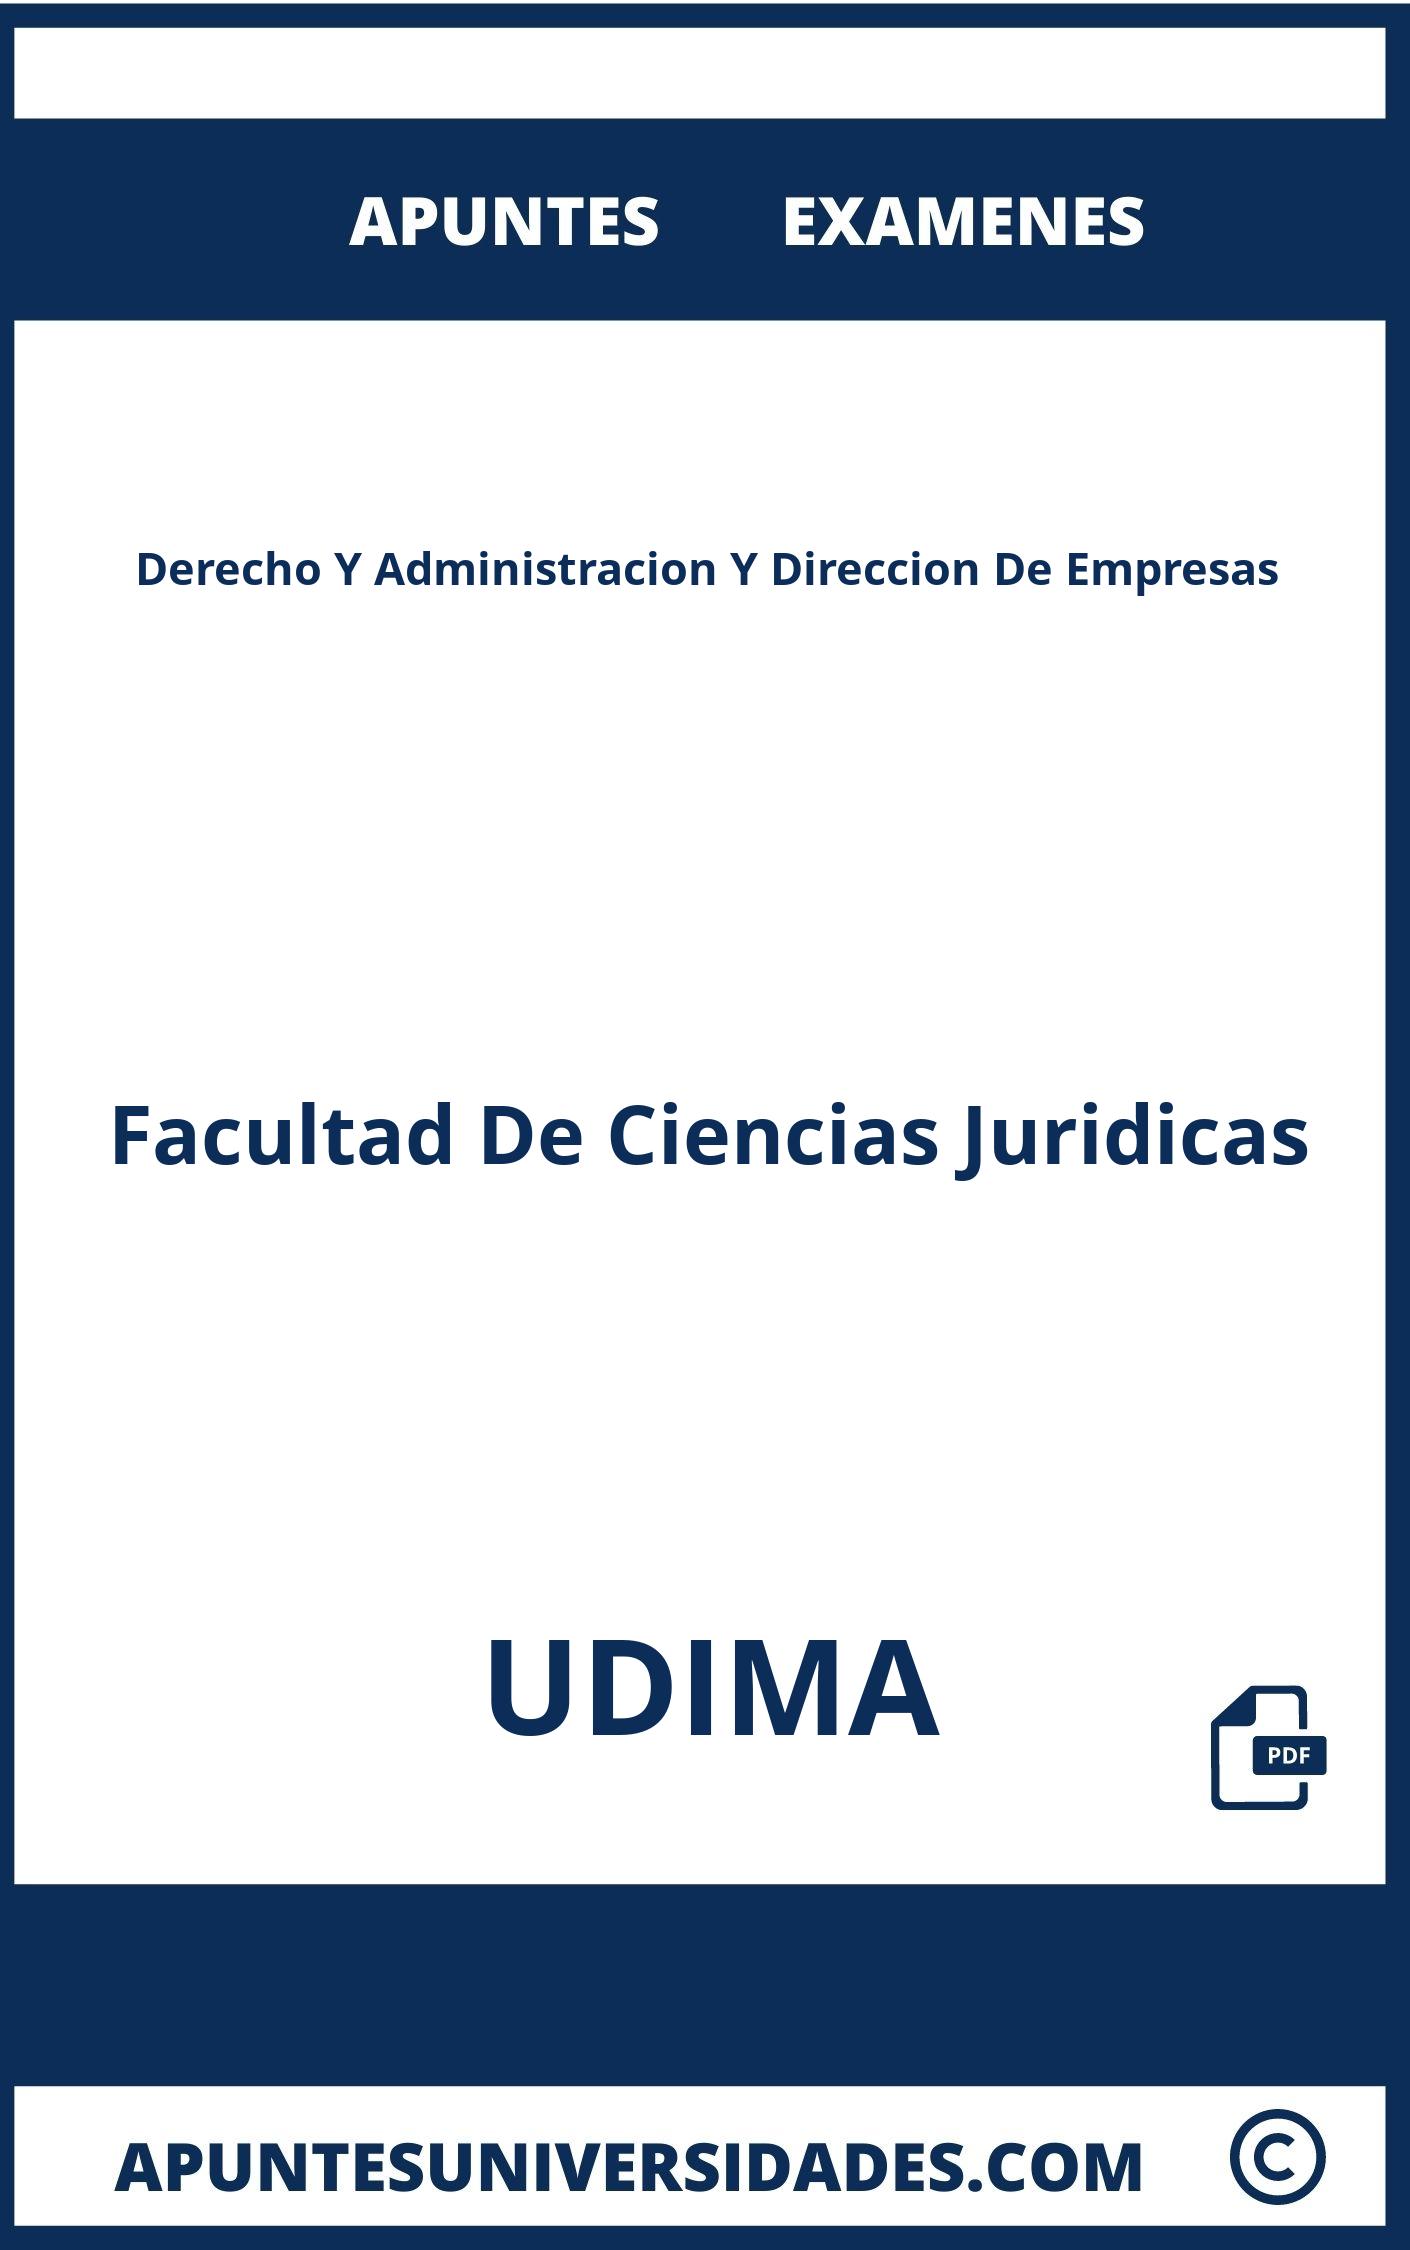 Examenes y Apuntes Derecho Y Administracion Y Direccion De Empresas UDIMA